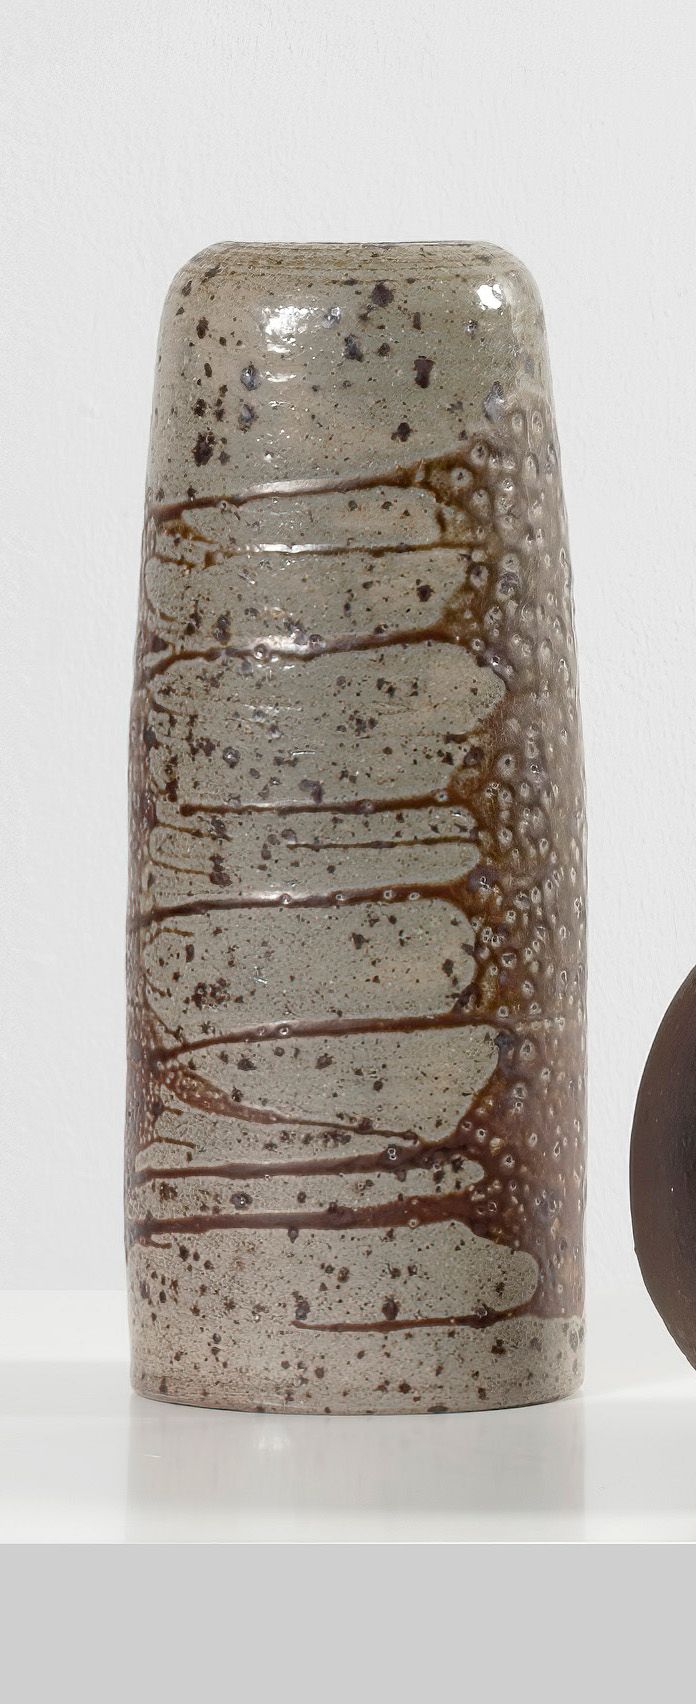 ANTOINE DE VINCK (1924-1992) 纪念品 
花瓶
石器。
有图案。

Vaas
石器。
有图案的。

花瓶
石器。
有图案的。

约19&hellip;